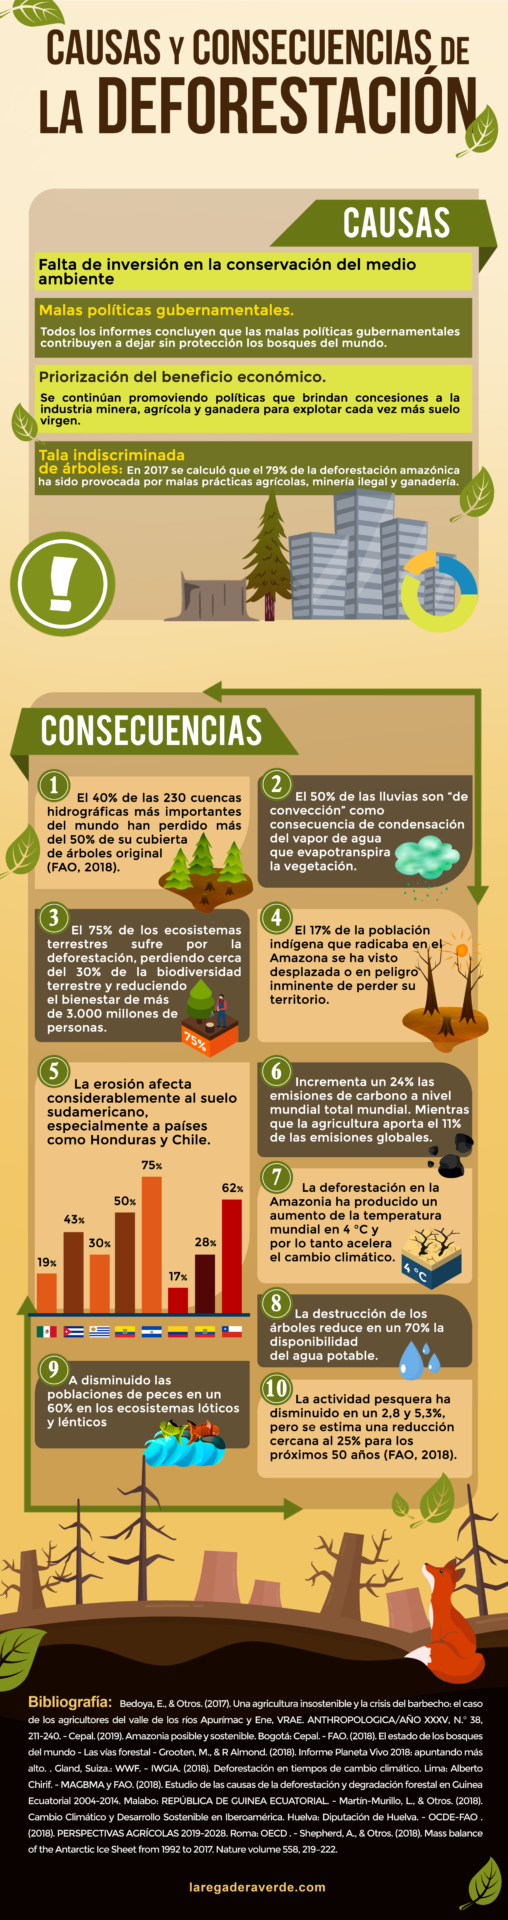 Infografia deforestacion